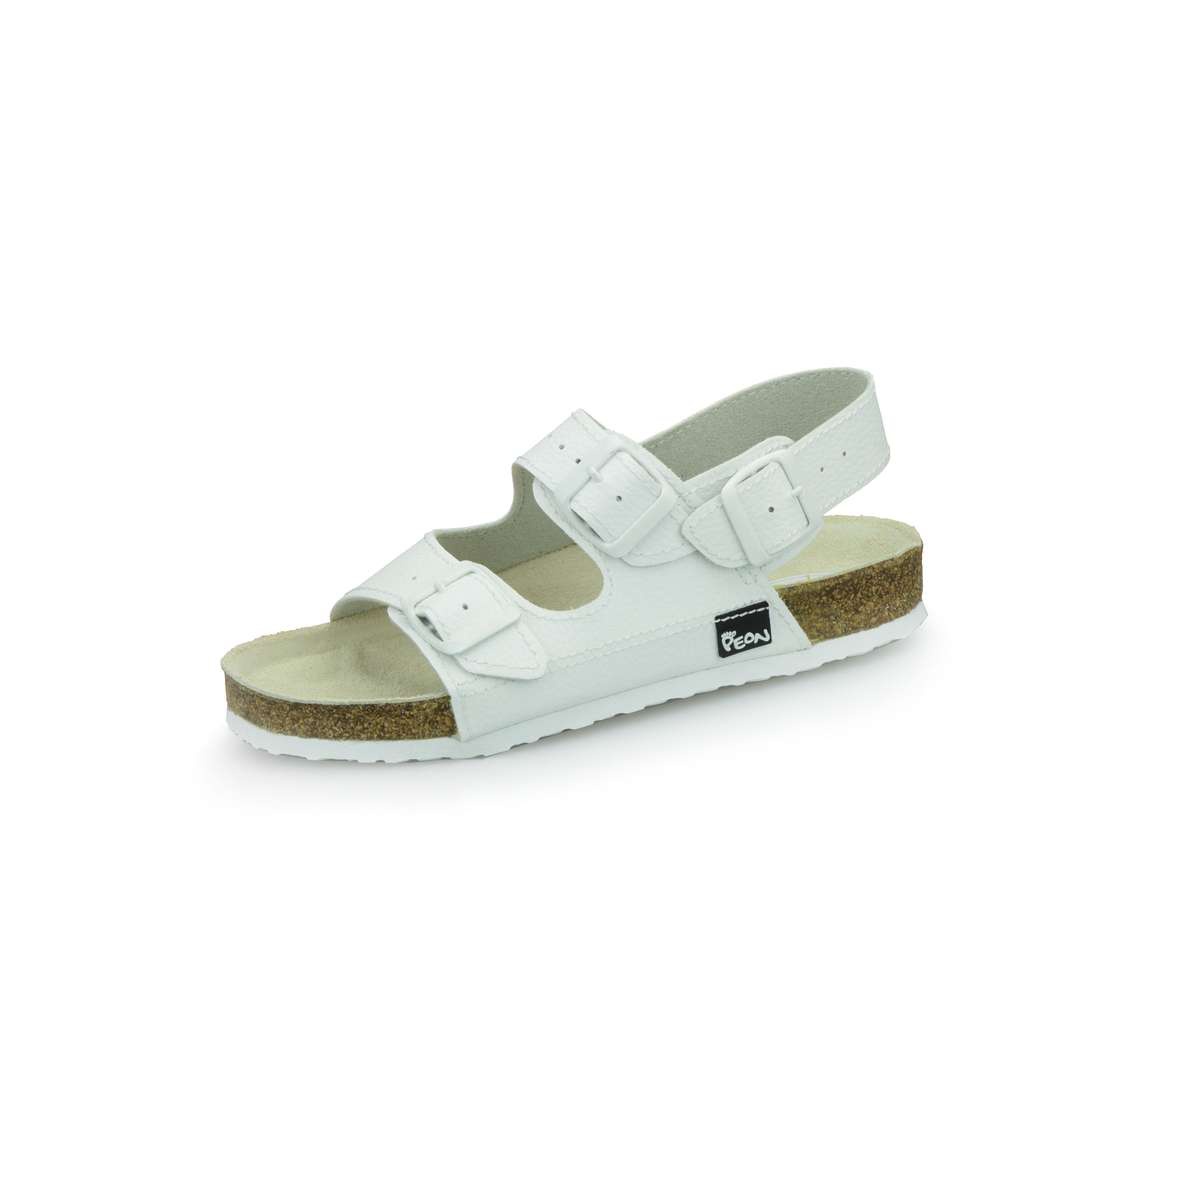 PEON PE/131-5 bílé dámské zdravotní korkové sandále BARVA: BÍLÁ, VELIKOST: 41